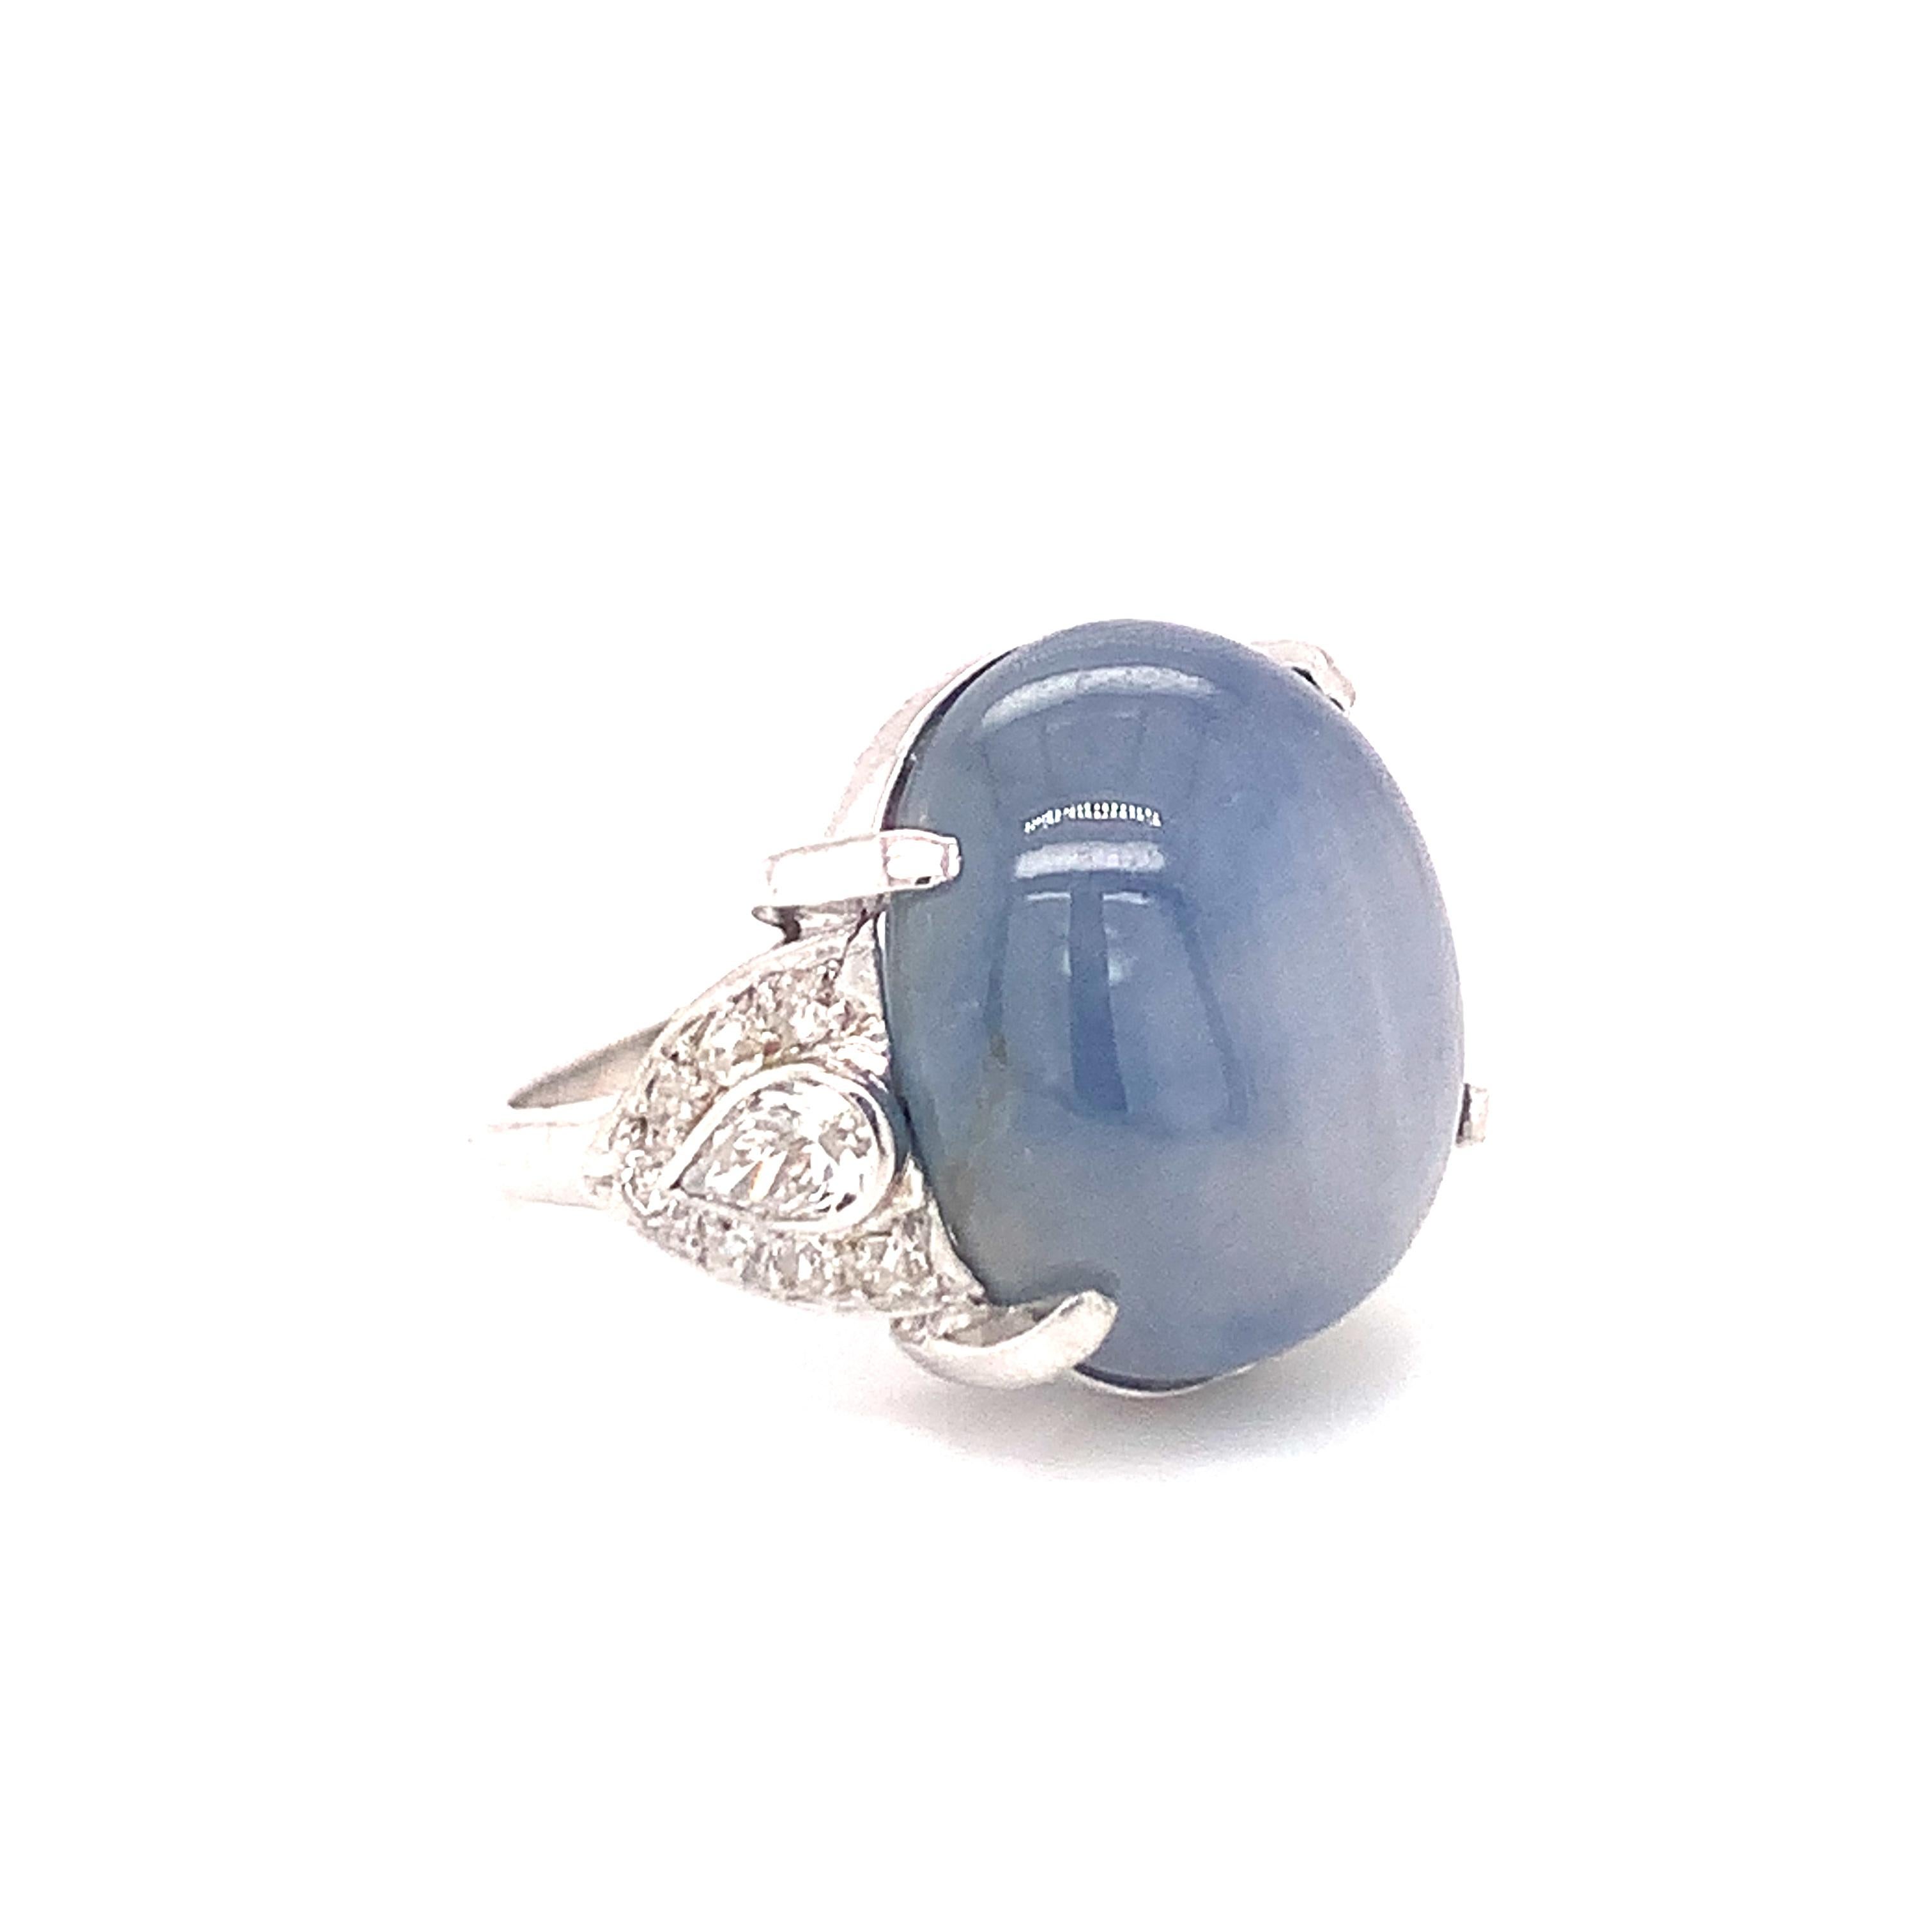 Art-Deco-Sternsaphir- und Diamantring aus Platin mit einem ovalen, graublauen Sternsaphir im Cabochon-Schliff mit einem Gewicht von 36 ct., akzentuiert durch alte europäische Diamanten im Rundschliff und Birnenbrillanten mit einem Gesamtgewicht von